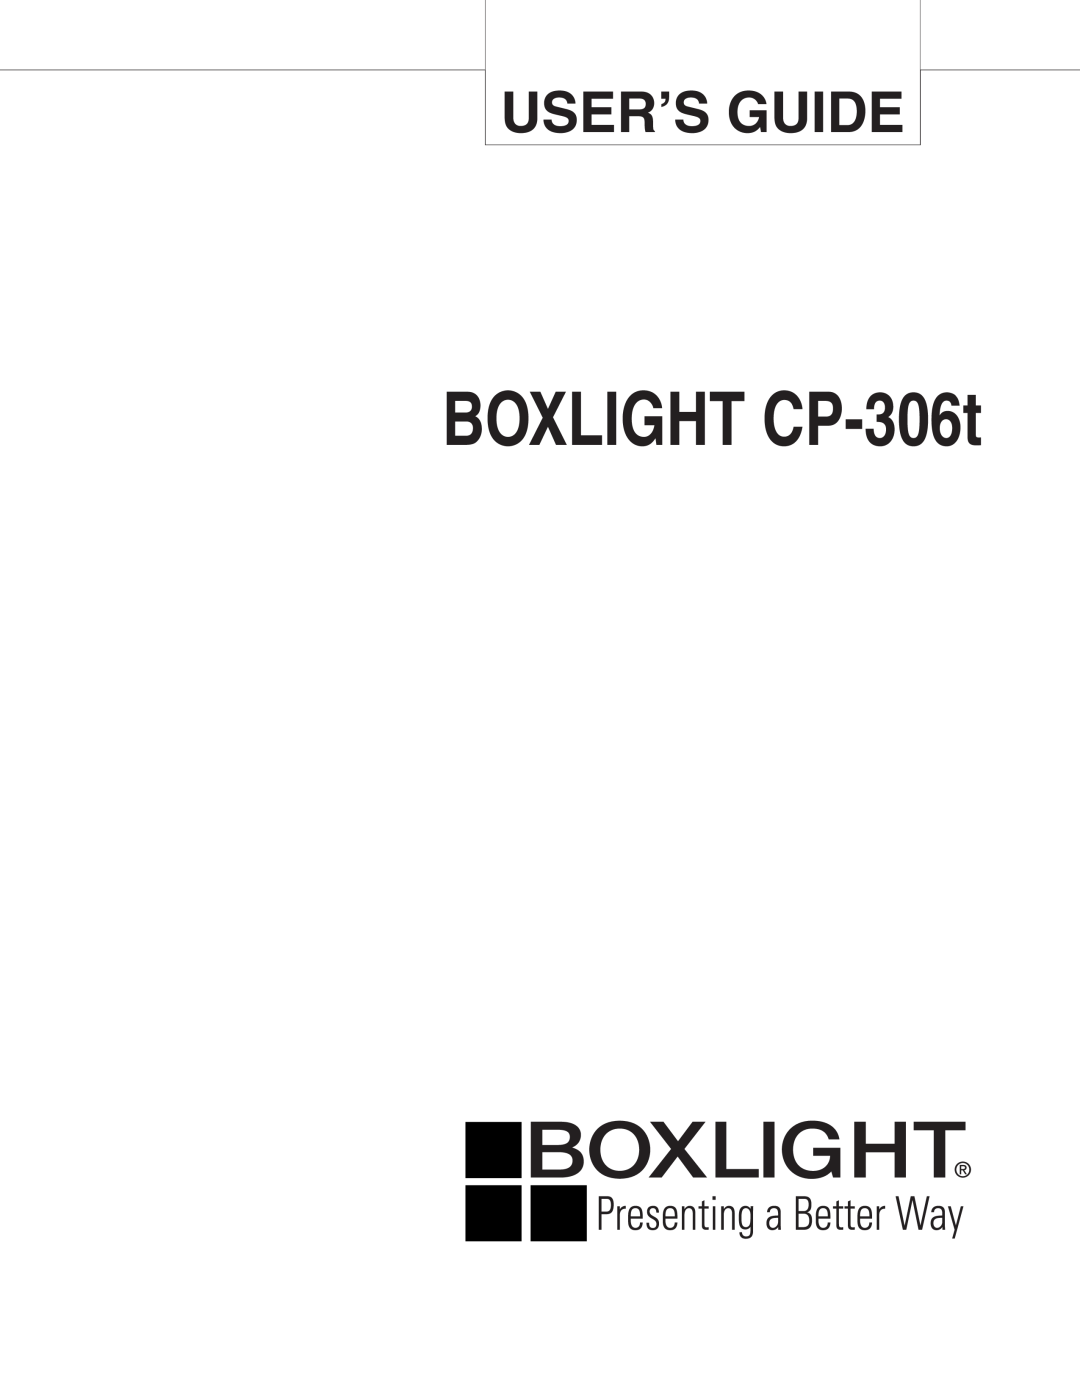 BOXLIGHT manual BOXLIGHT CP-306t, User’S Guide 